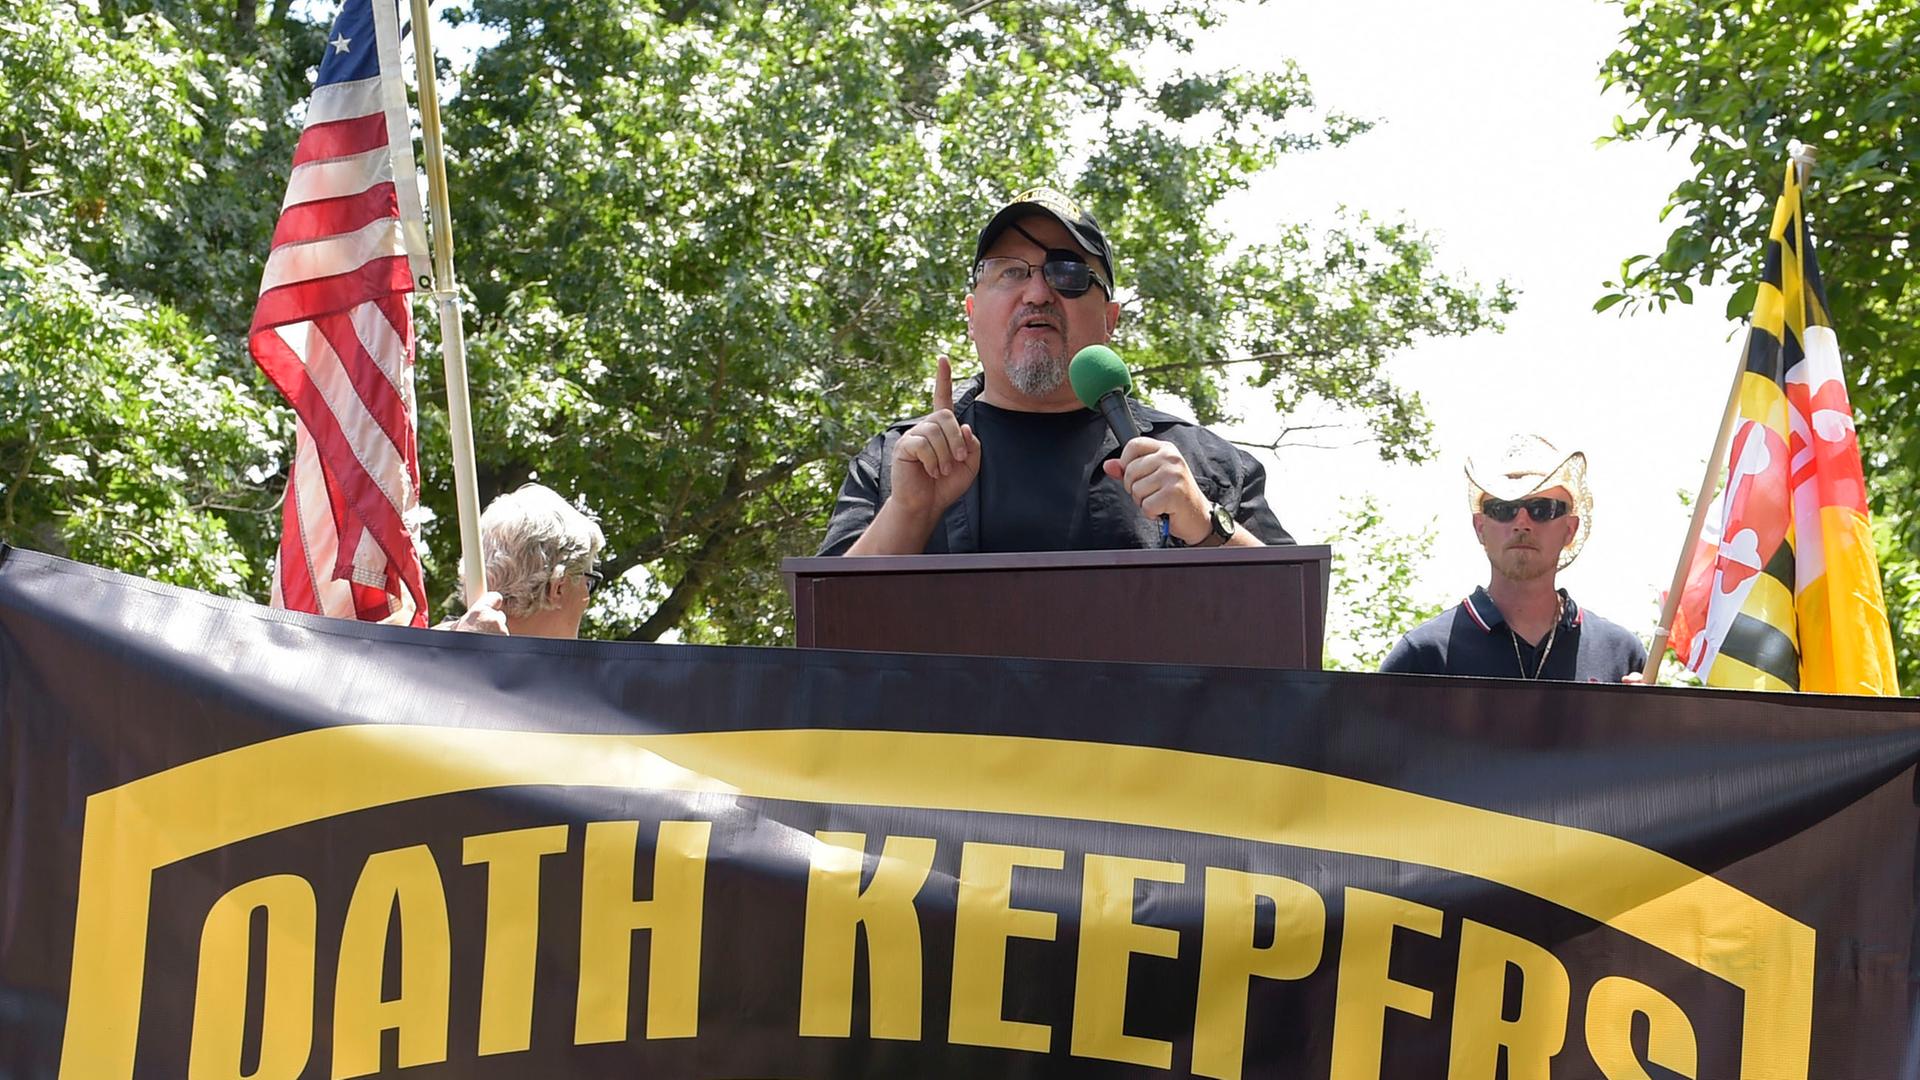 Rhodes steht an einem Redepult und spricht in ein Mikrofon. Er trägt eine Baseball-Kappe, vor ihm ist ein Banner mit der Aufschrift "Oath Keepers" aufgespannt. Im Hintergrund sieht man die US-amerikanische Flagge.